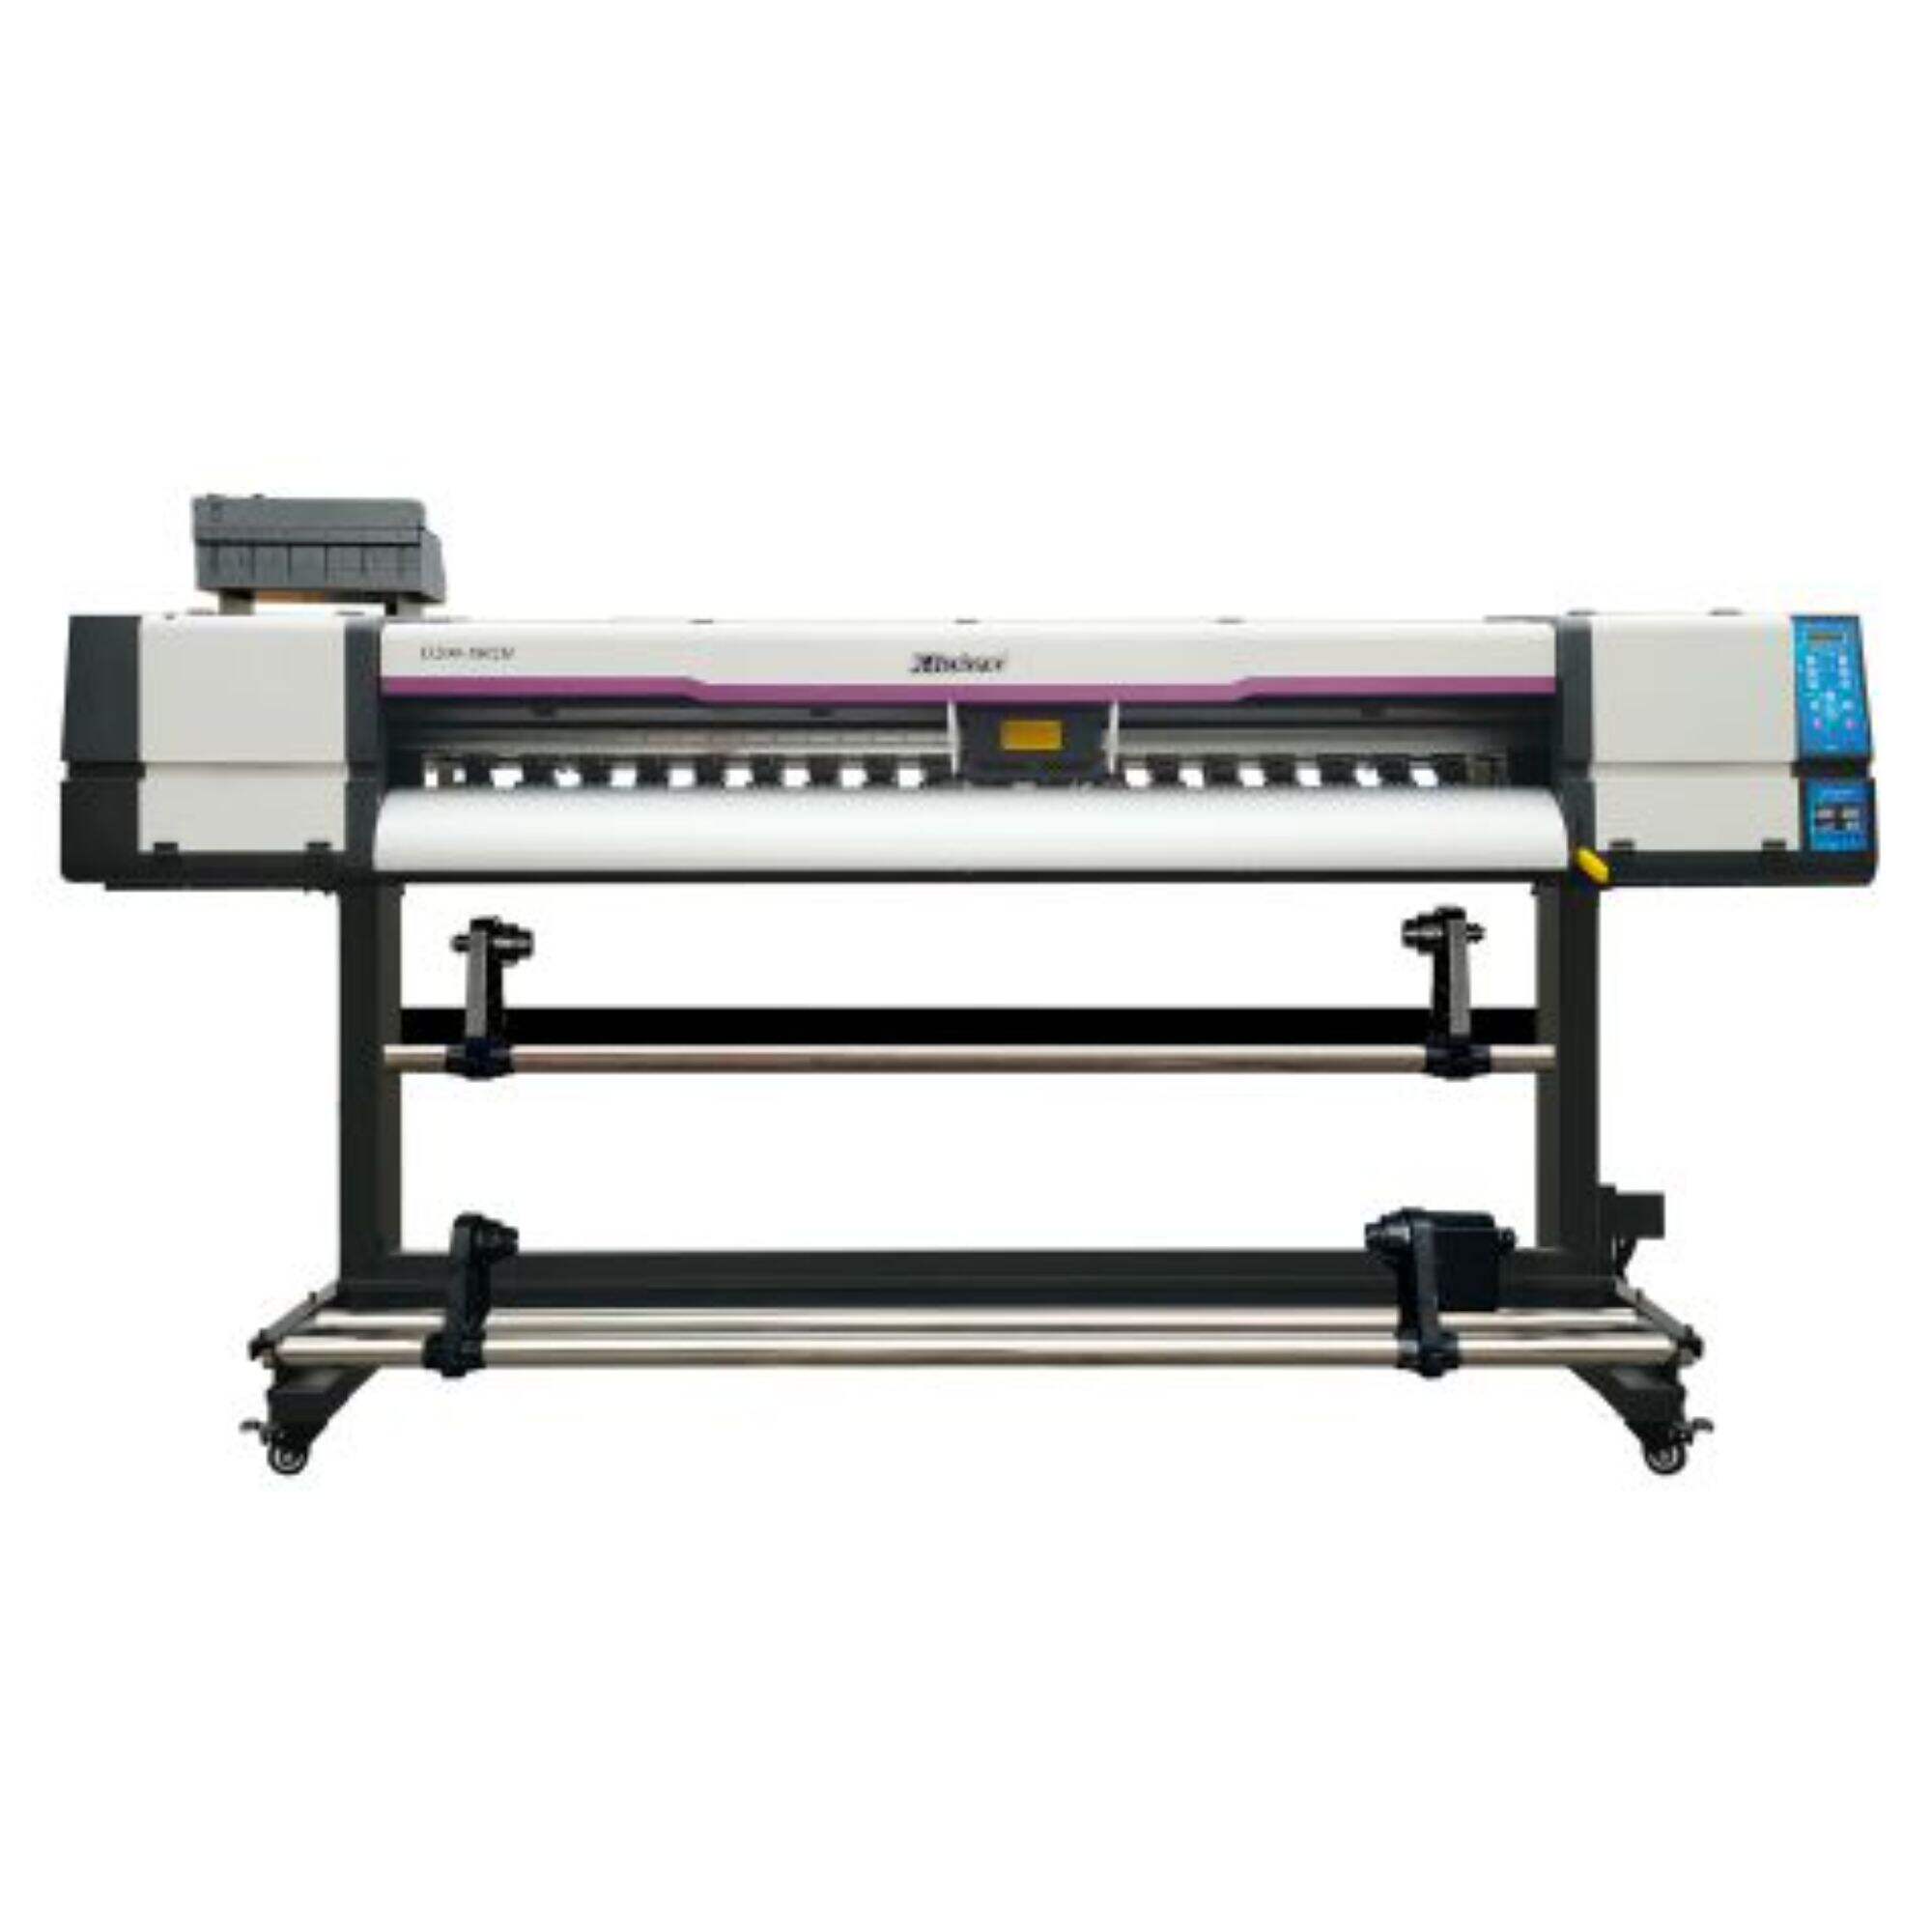 XL-1802H I3200 UV-skrivare